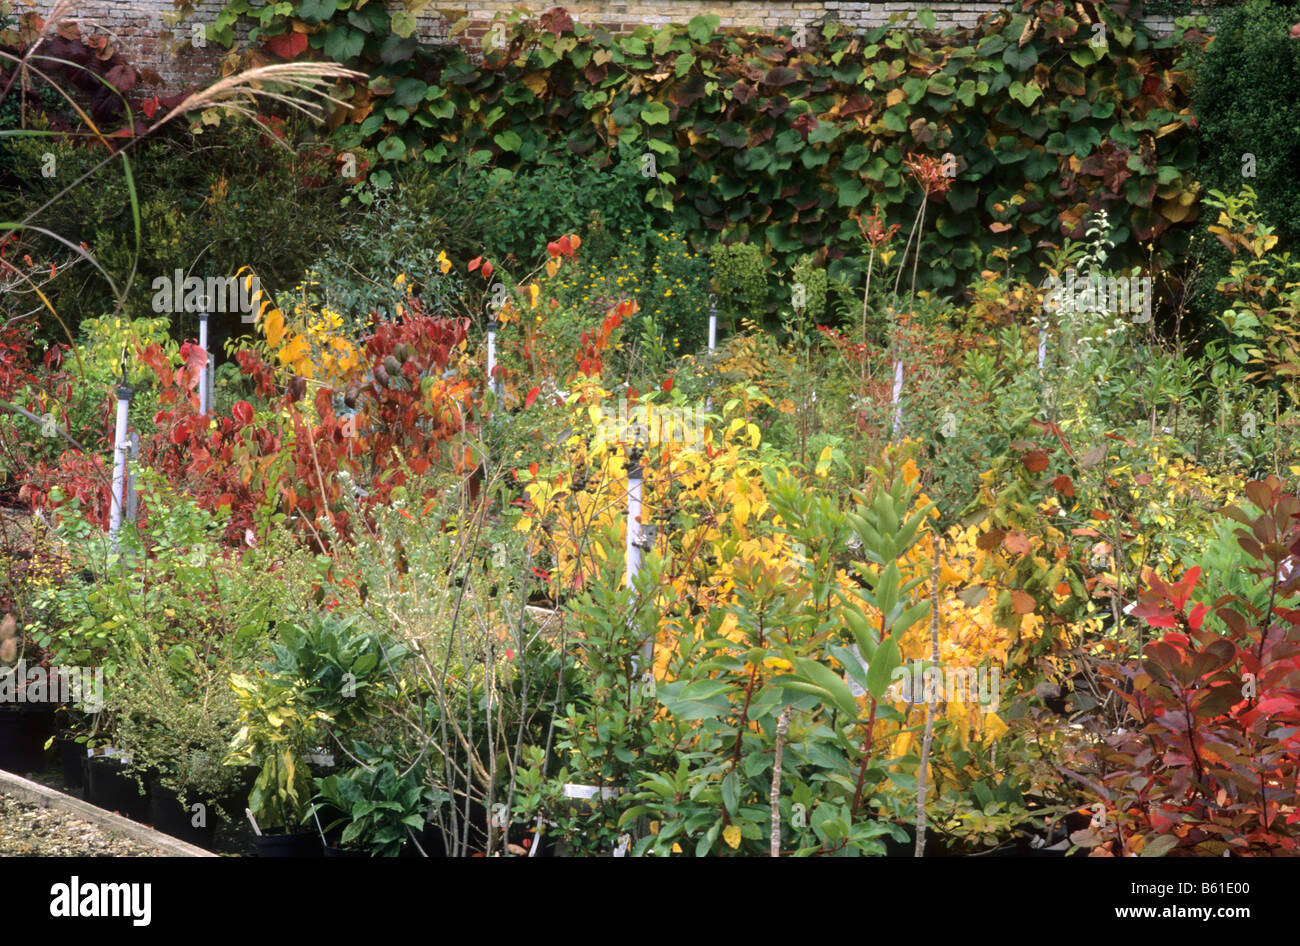 Centre de jardin pépinière de plantes d'automne pour la vente d'arbustes à feuillage couleur d'automne couleur feuille feuilles pots arbustes Banque D'Images